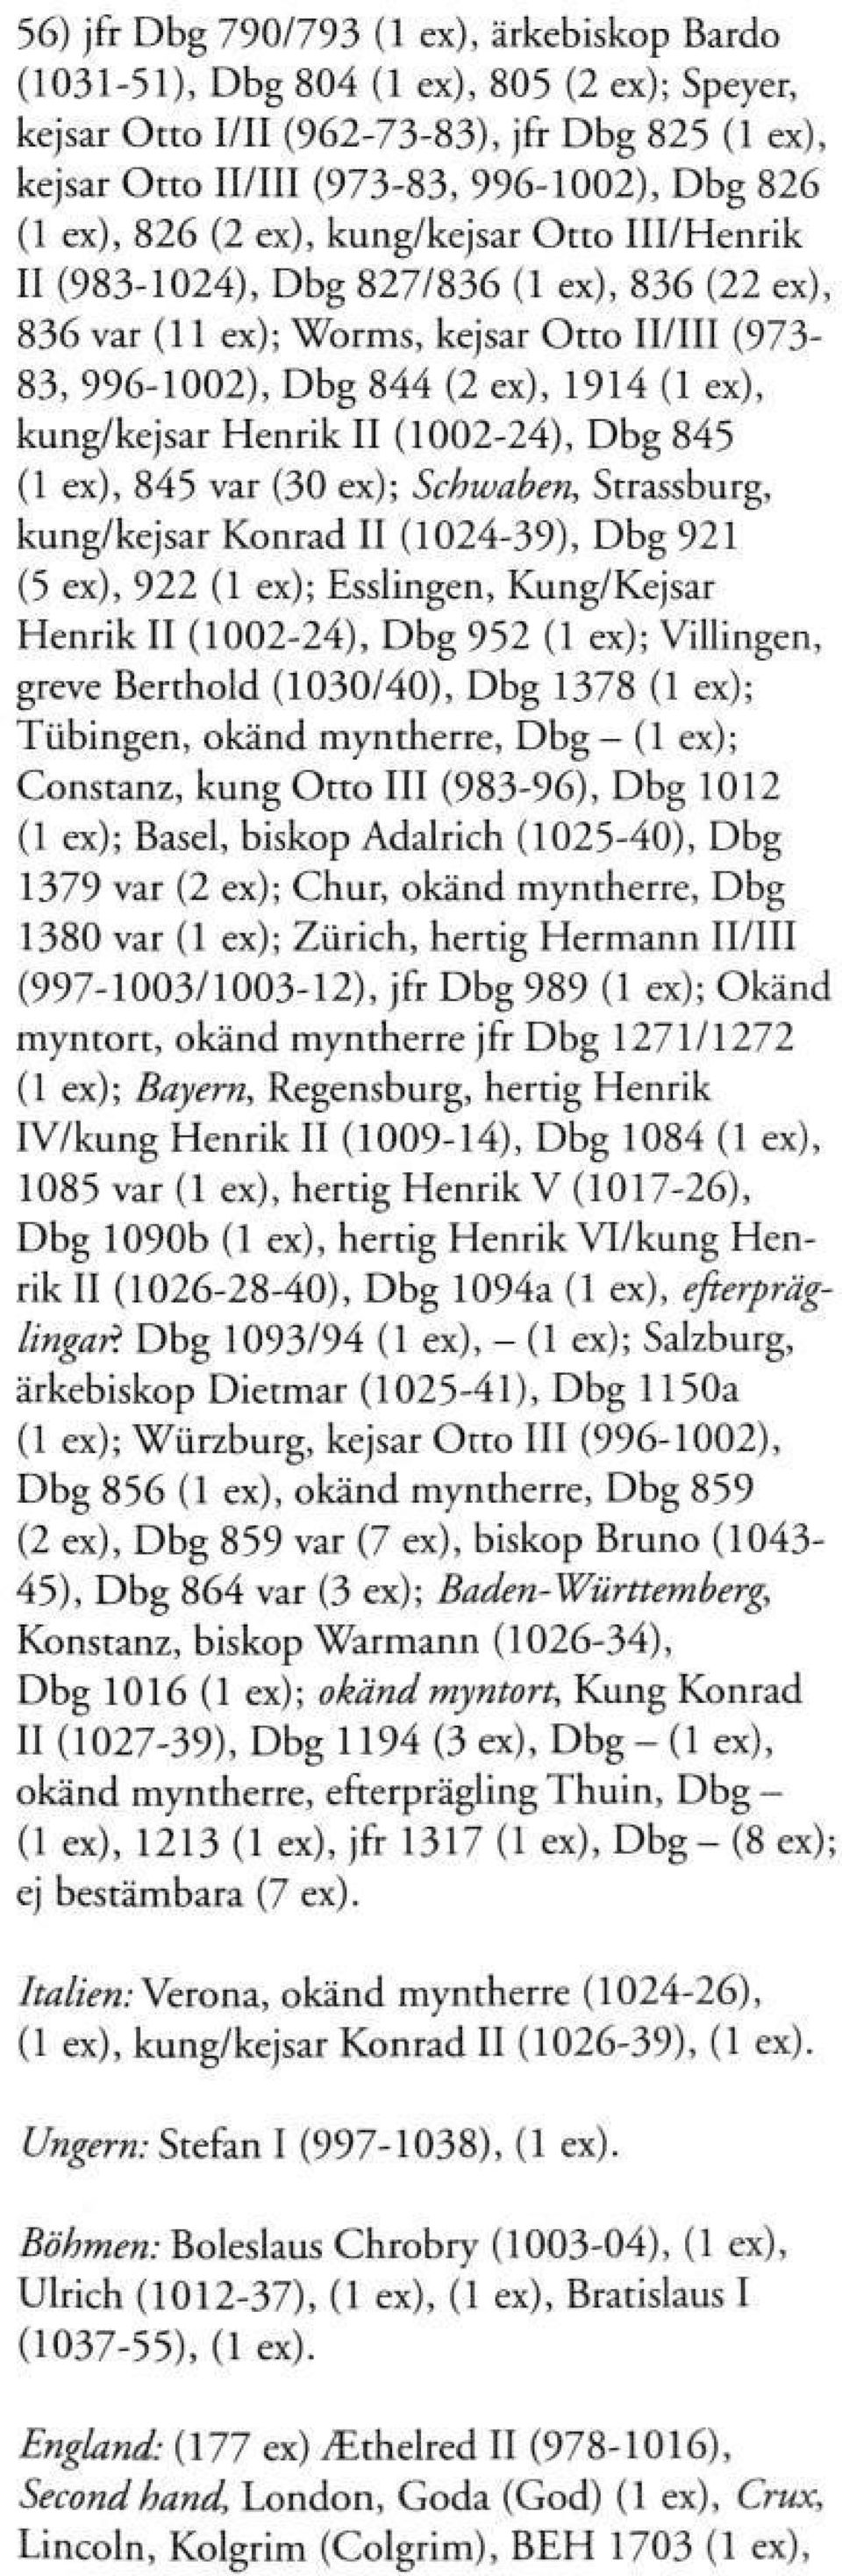 II (1002-24), Dbg 845 (1 ex), 845 var (30 ex); Schwaben, Strassburg, kung/kejsar Konrad II (1024-39), Dbg 921 (5 ex), 922 (1 ex); Esslingen, Kung/Kejsar Henrik II (1002-24), Dbg 952 (1 ex);